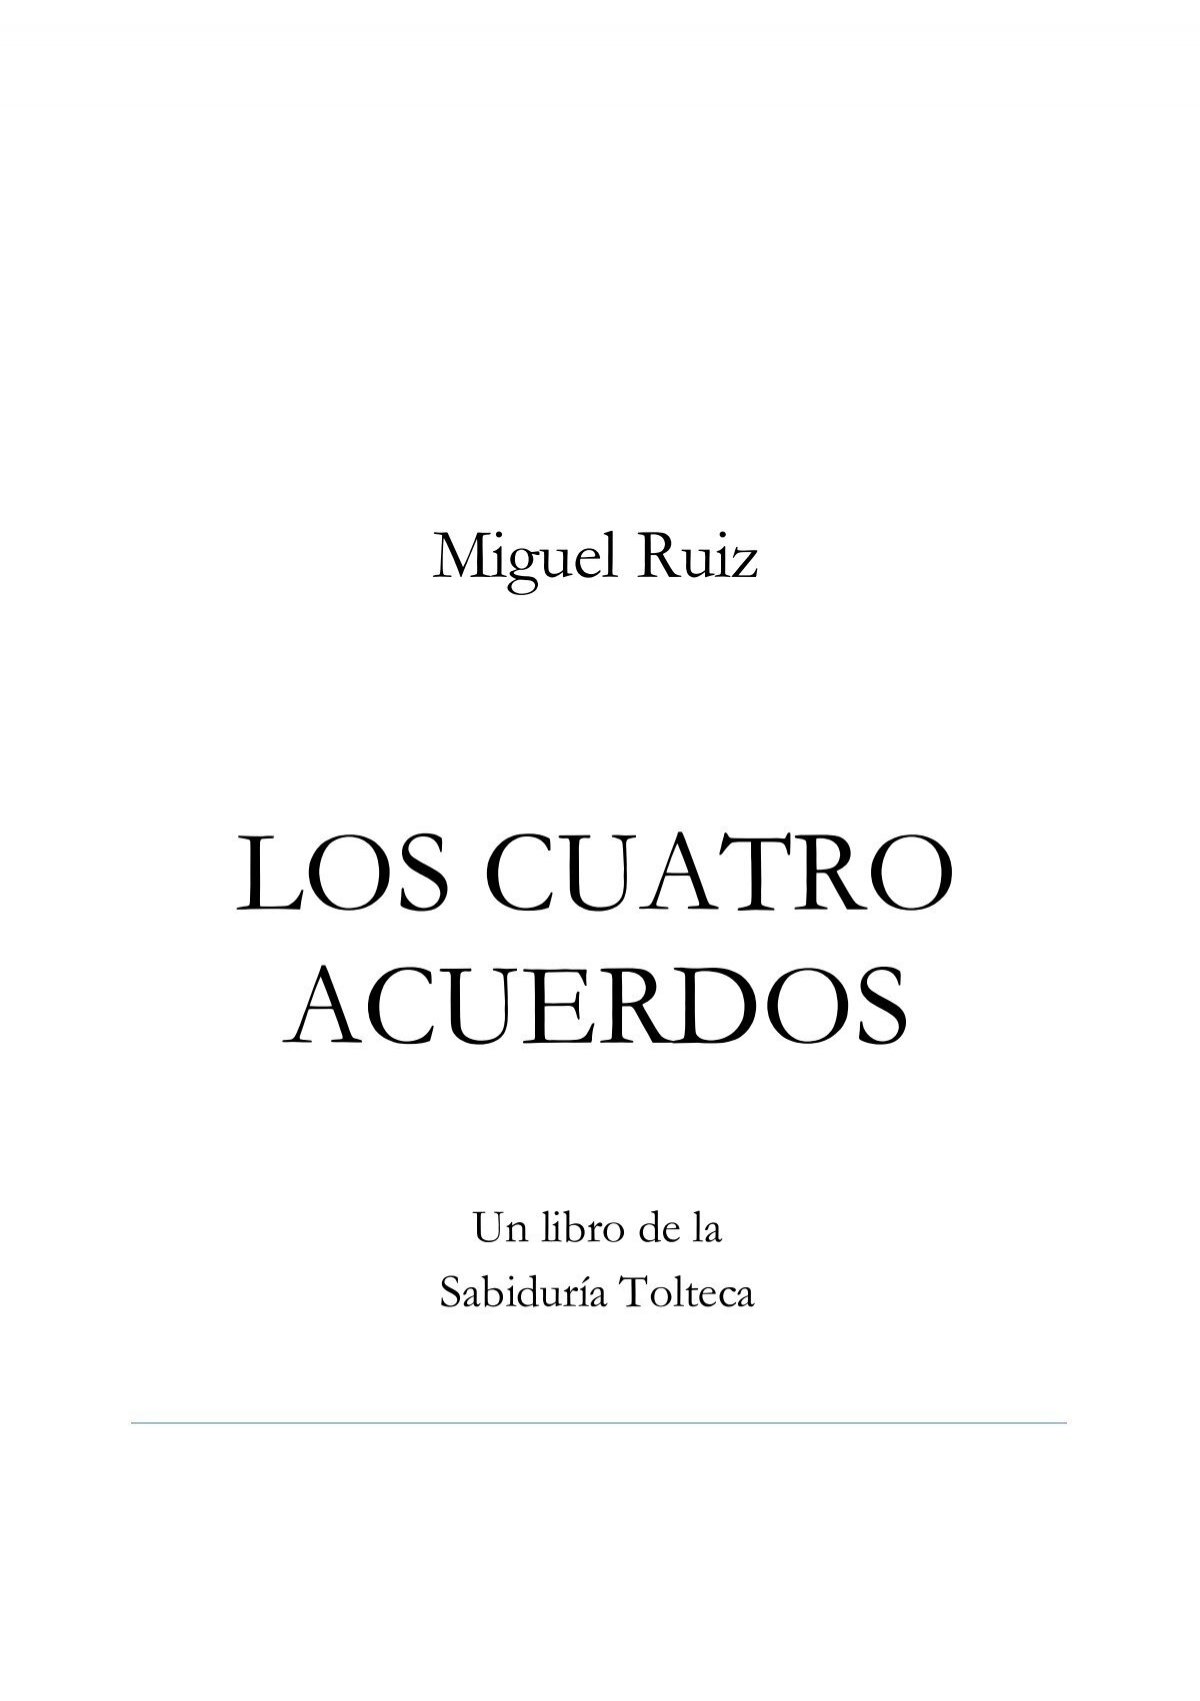 Los cuatro acuerdos - Un libro de sabiduría tolteca. Dr. Miguel Ruiz –  Podcast – Podtail